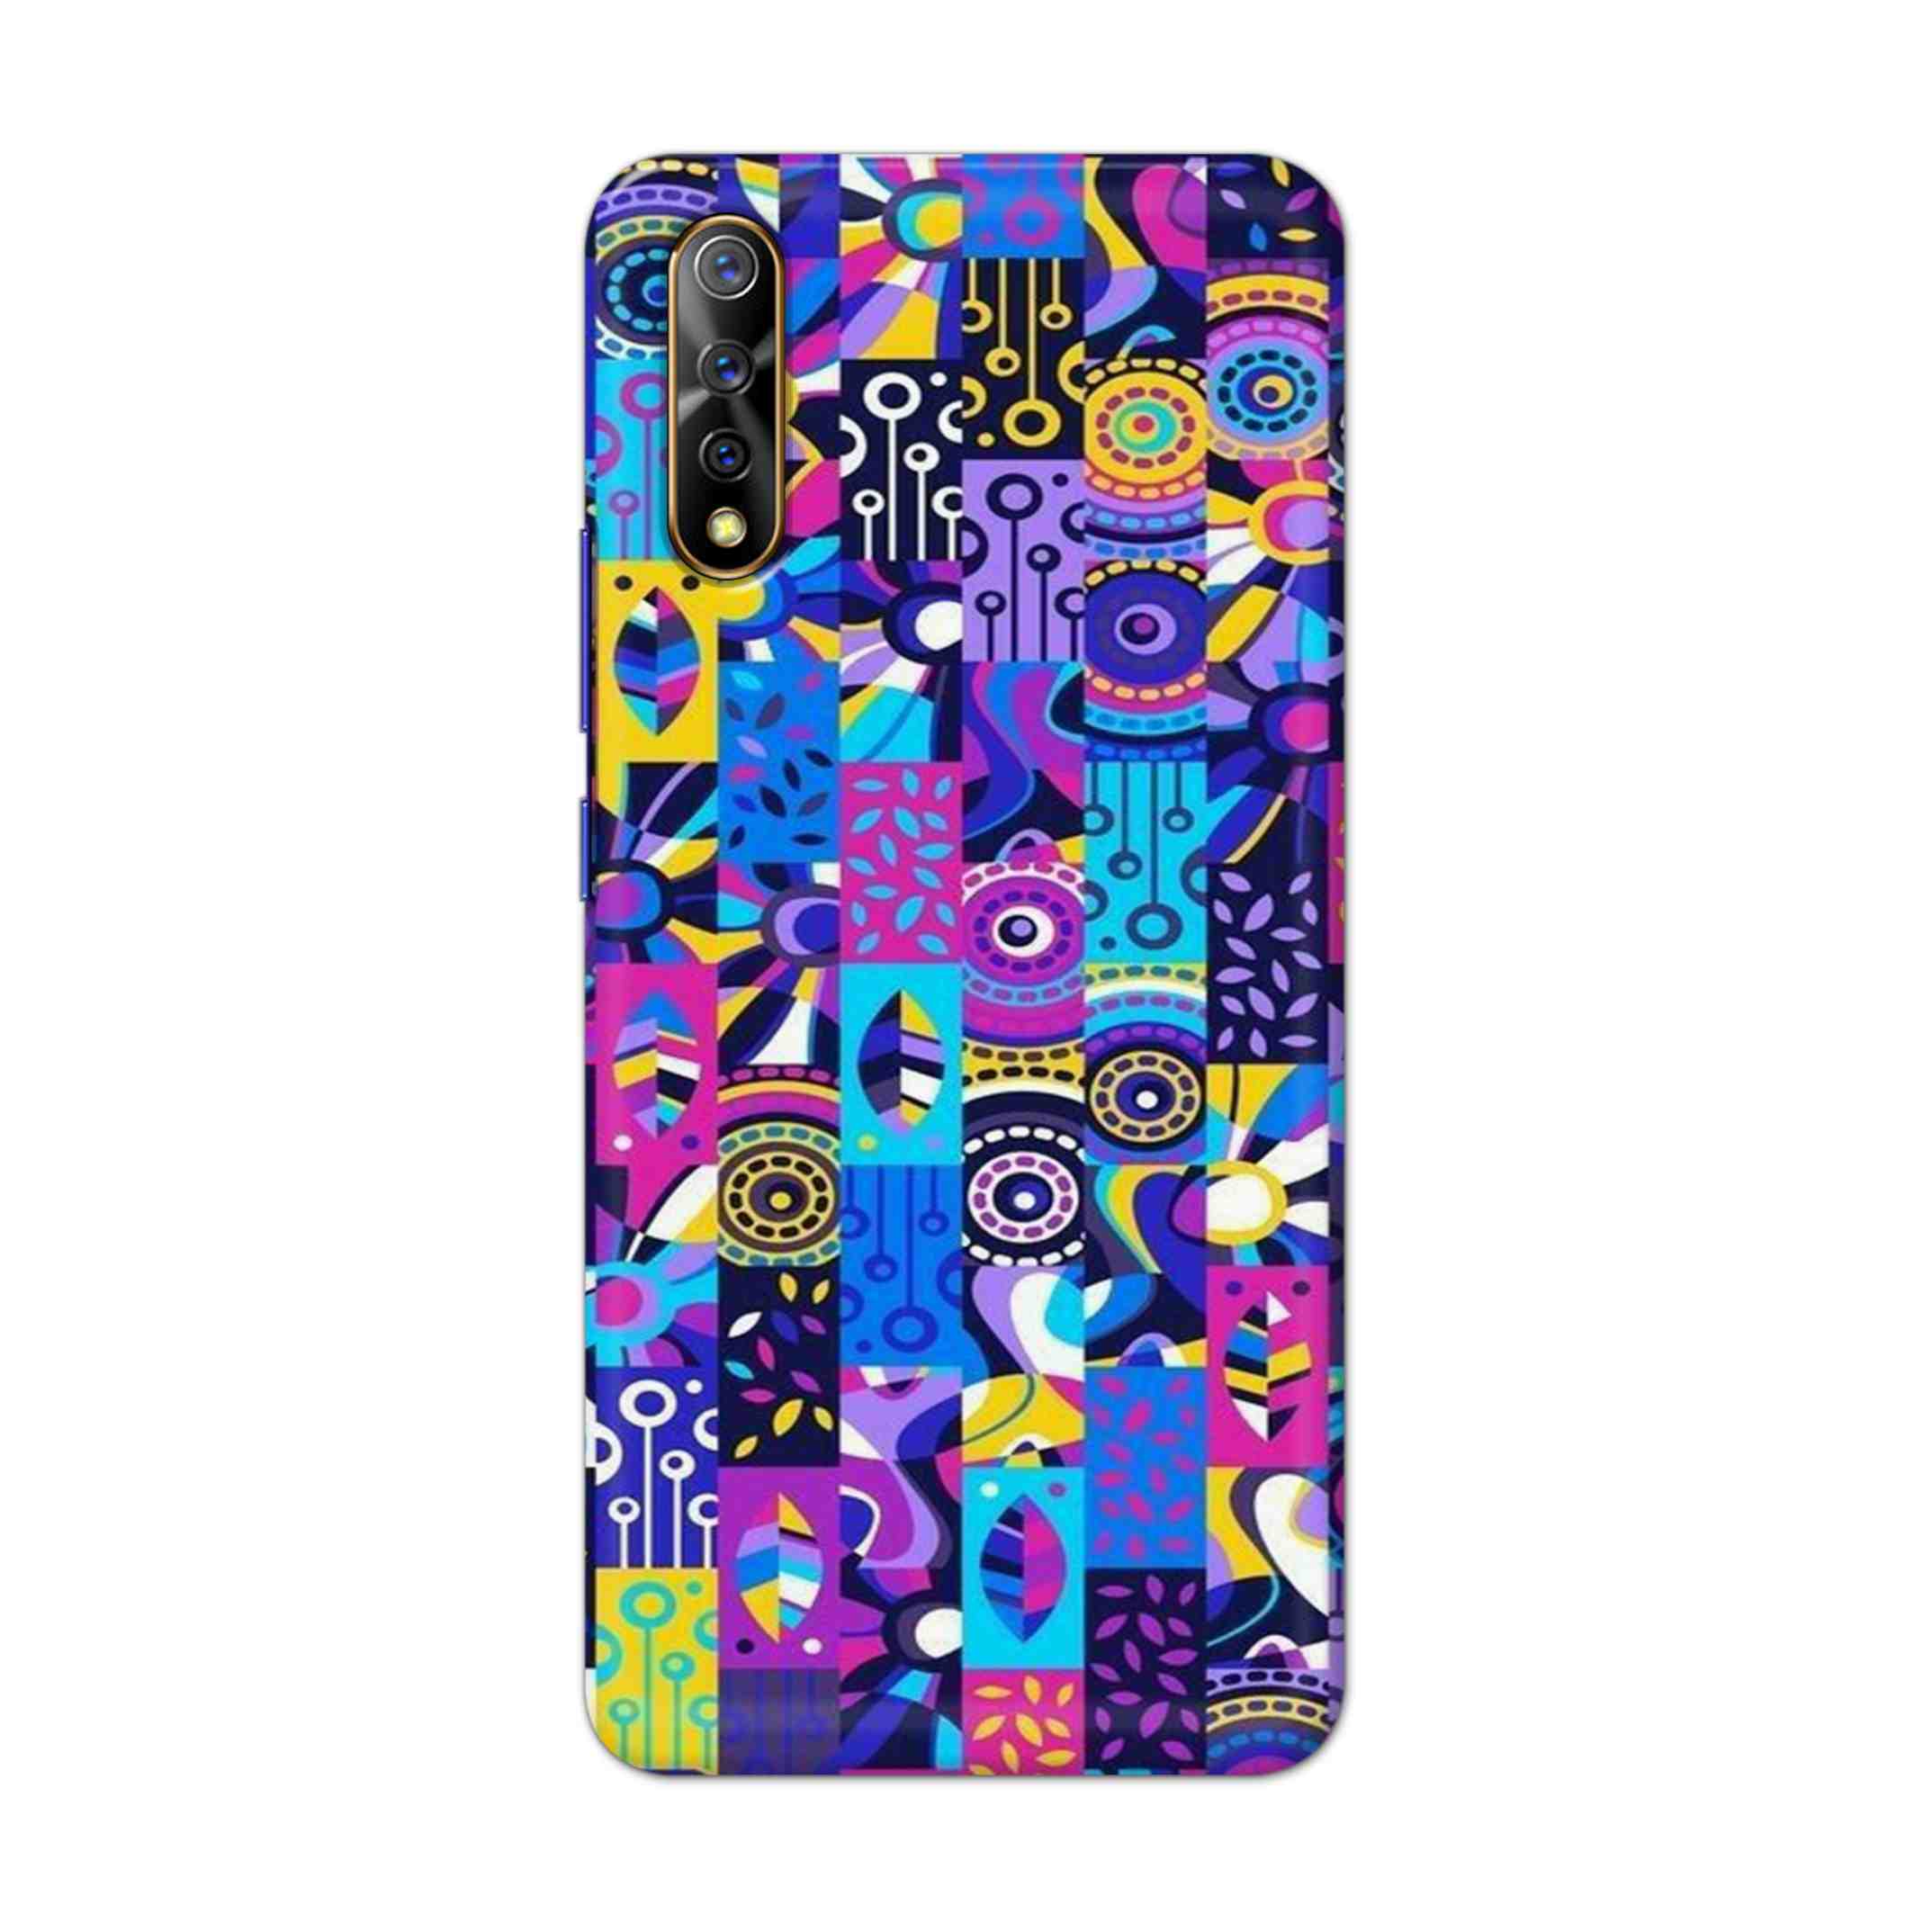 Buy Rainbow Art Hard Back Mobile Phone Case Cover For Vivo S1 / Z1x Online